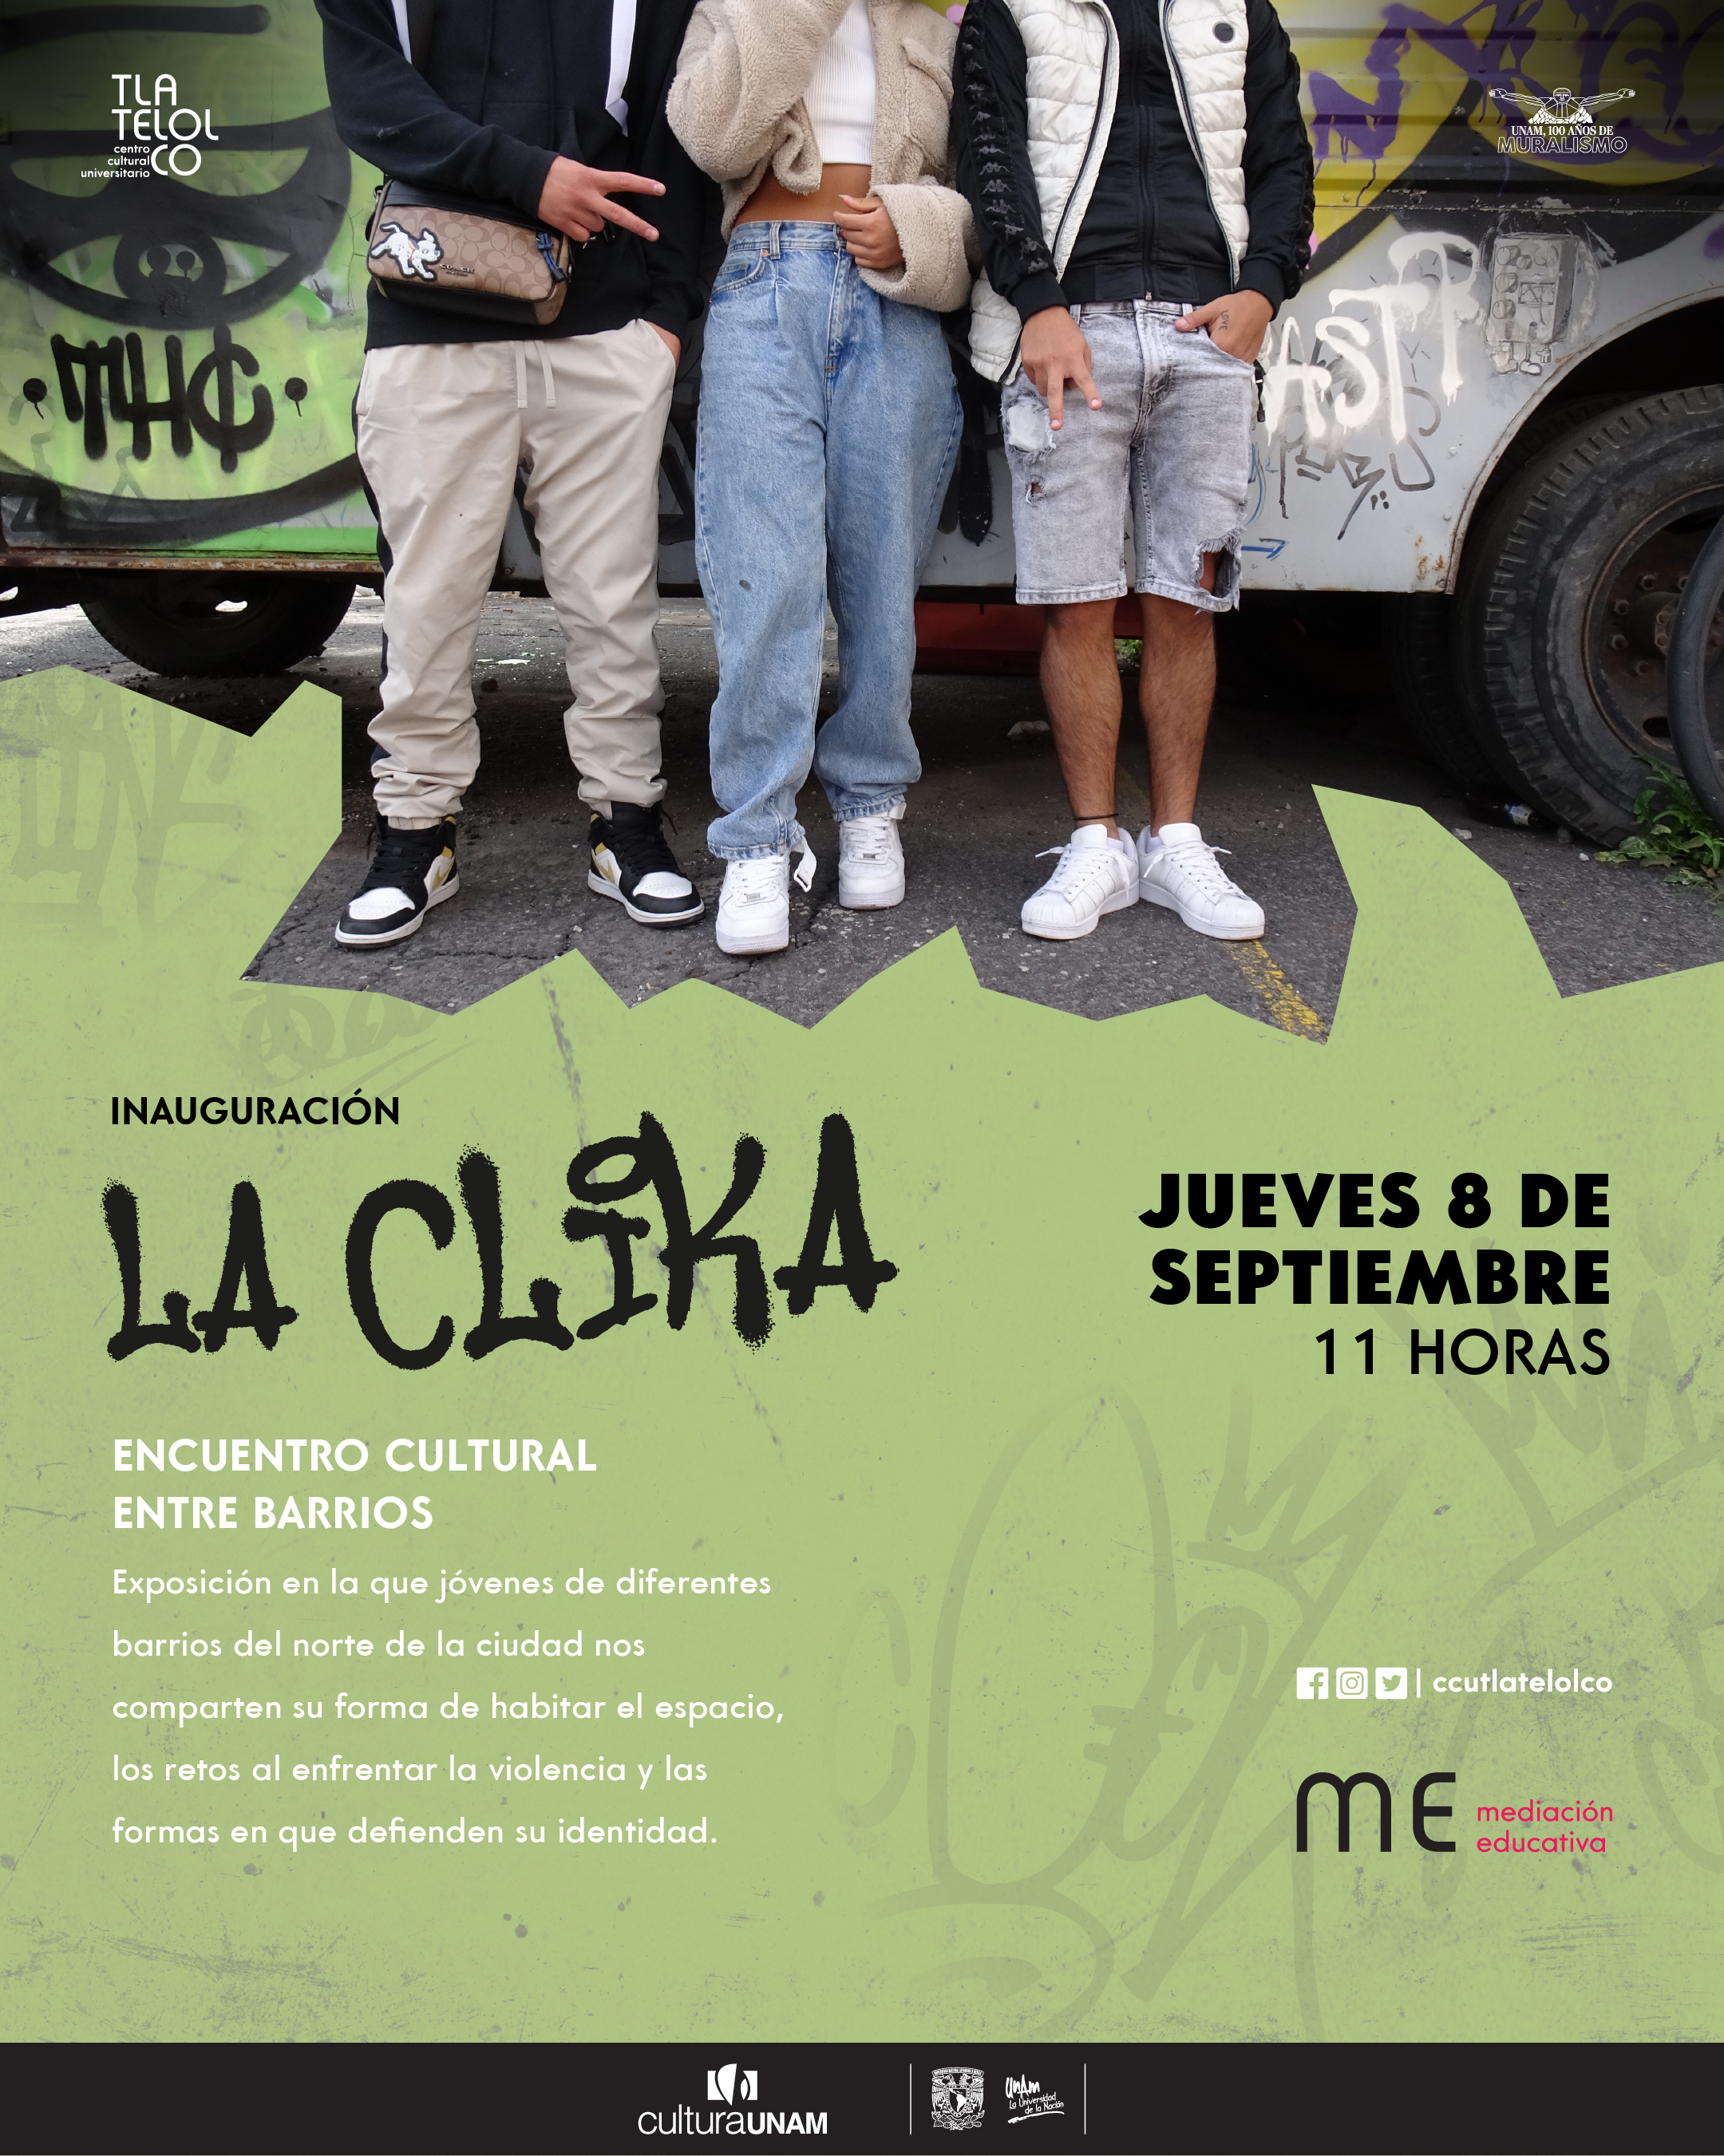 Inauguración La Clika  Encuentro cultural entre barrios